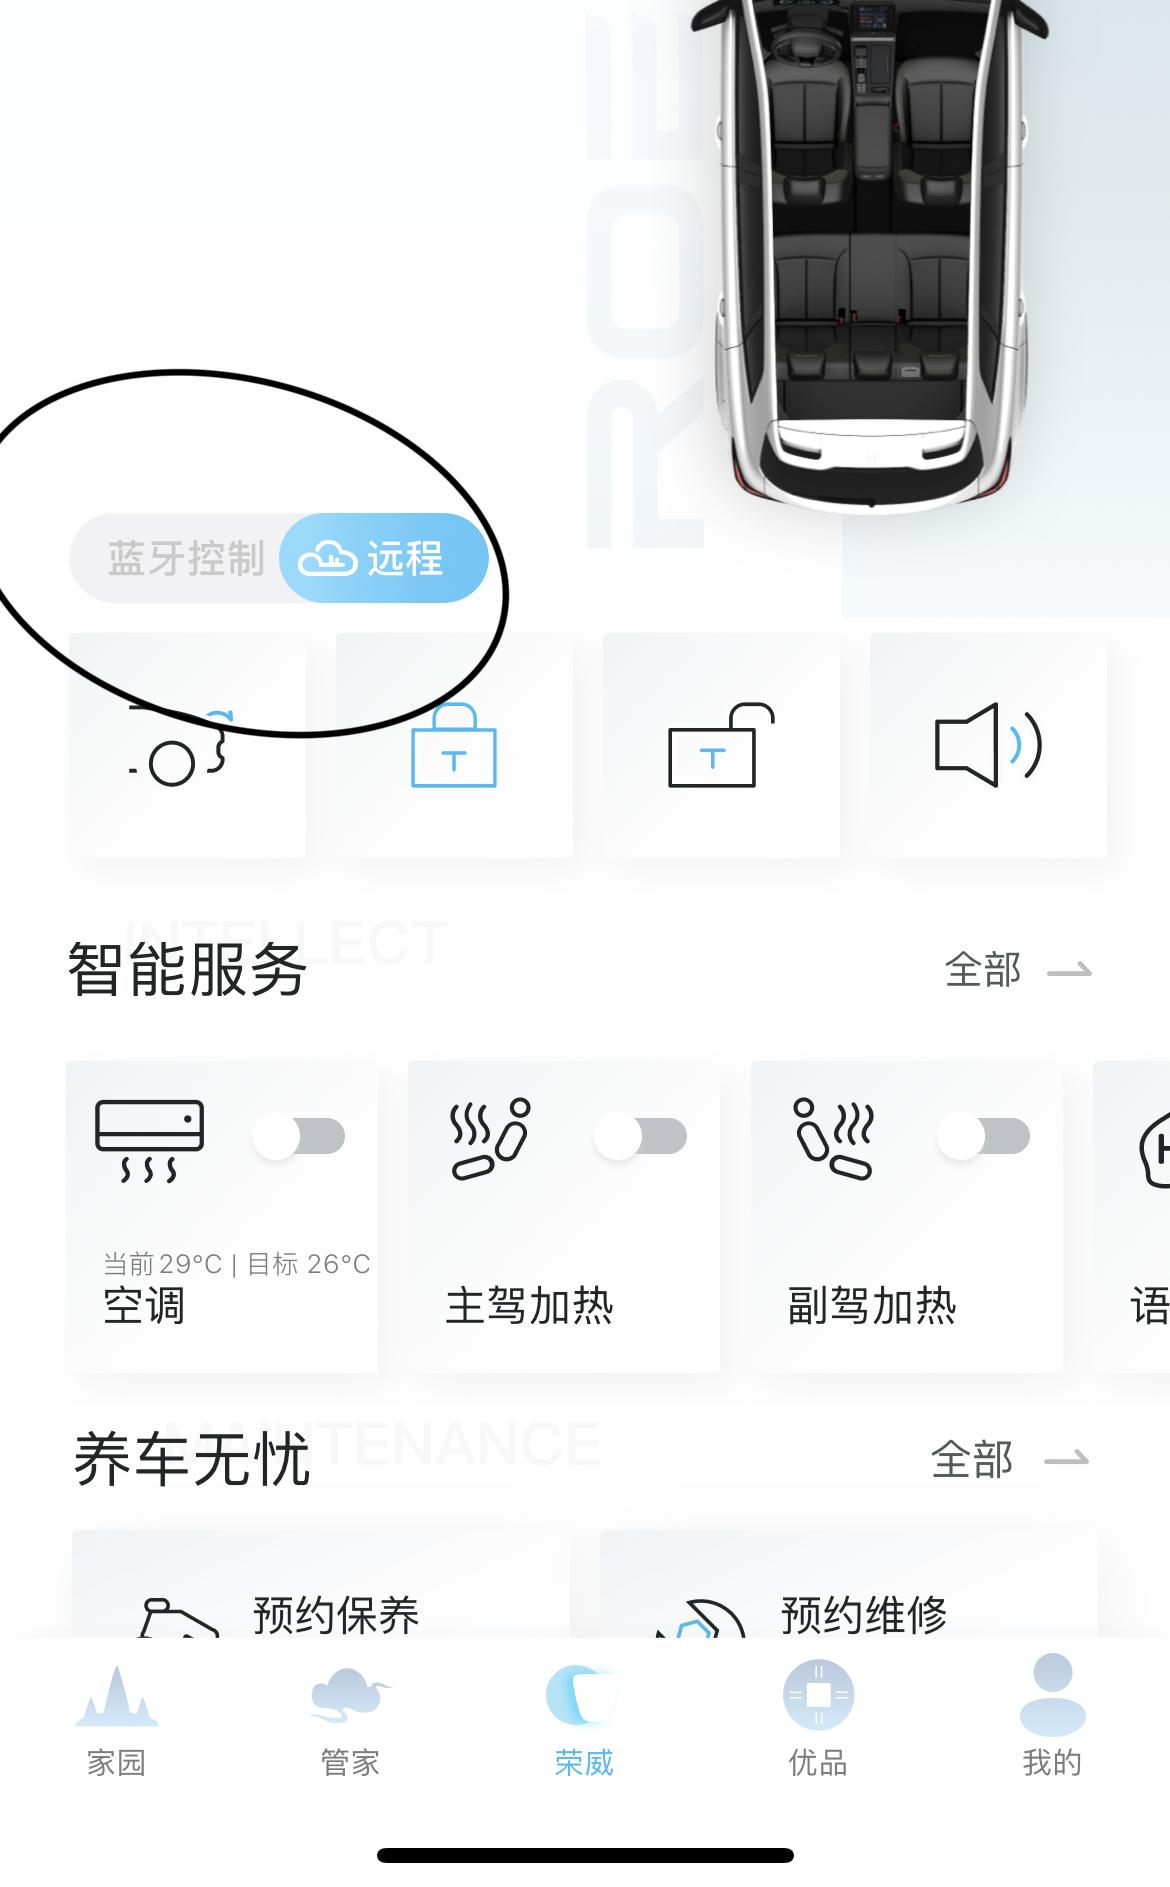 荣威RX5 荣威app更新了以后蓝牙控制不了车子，导致我没钥匙就没办法启动发动机了。有没有解决办法